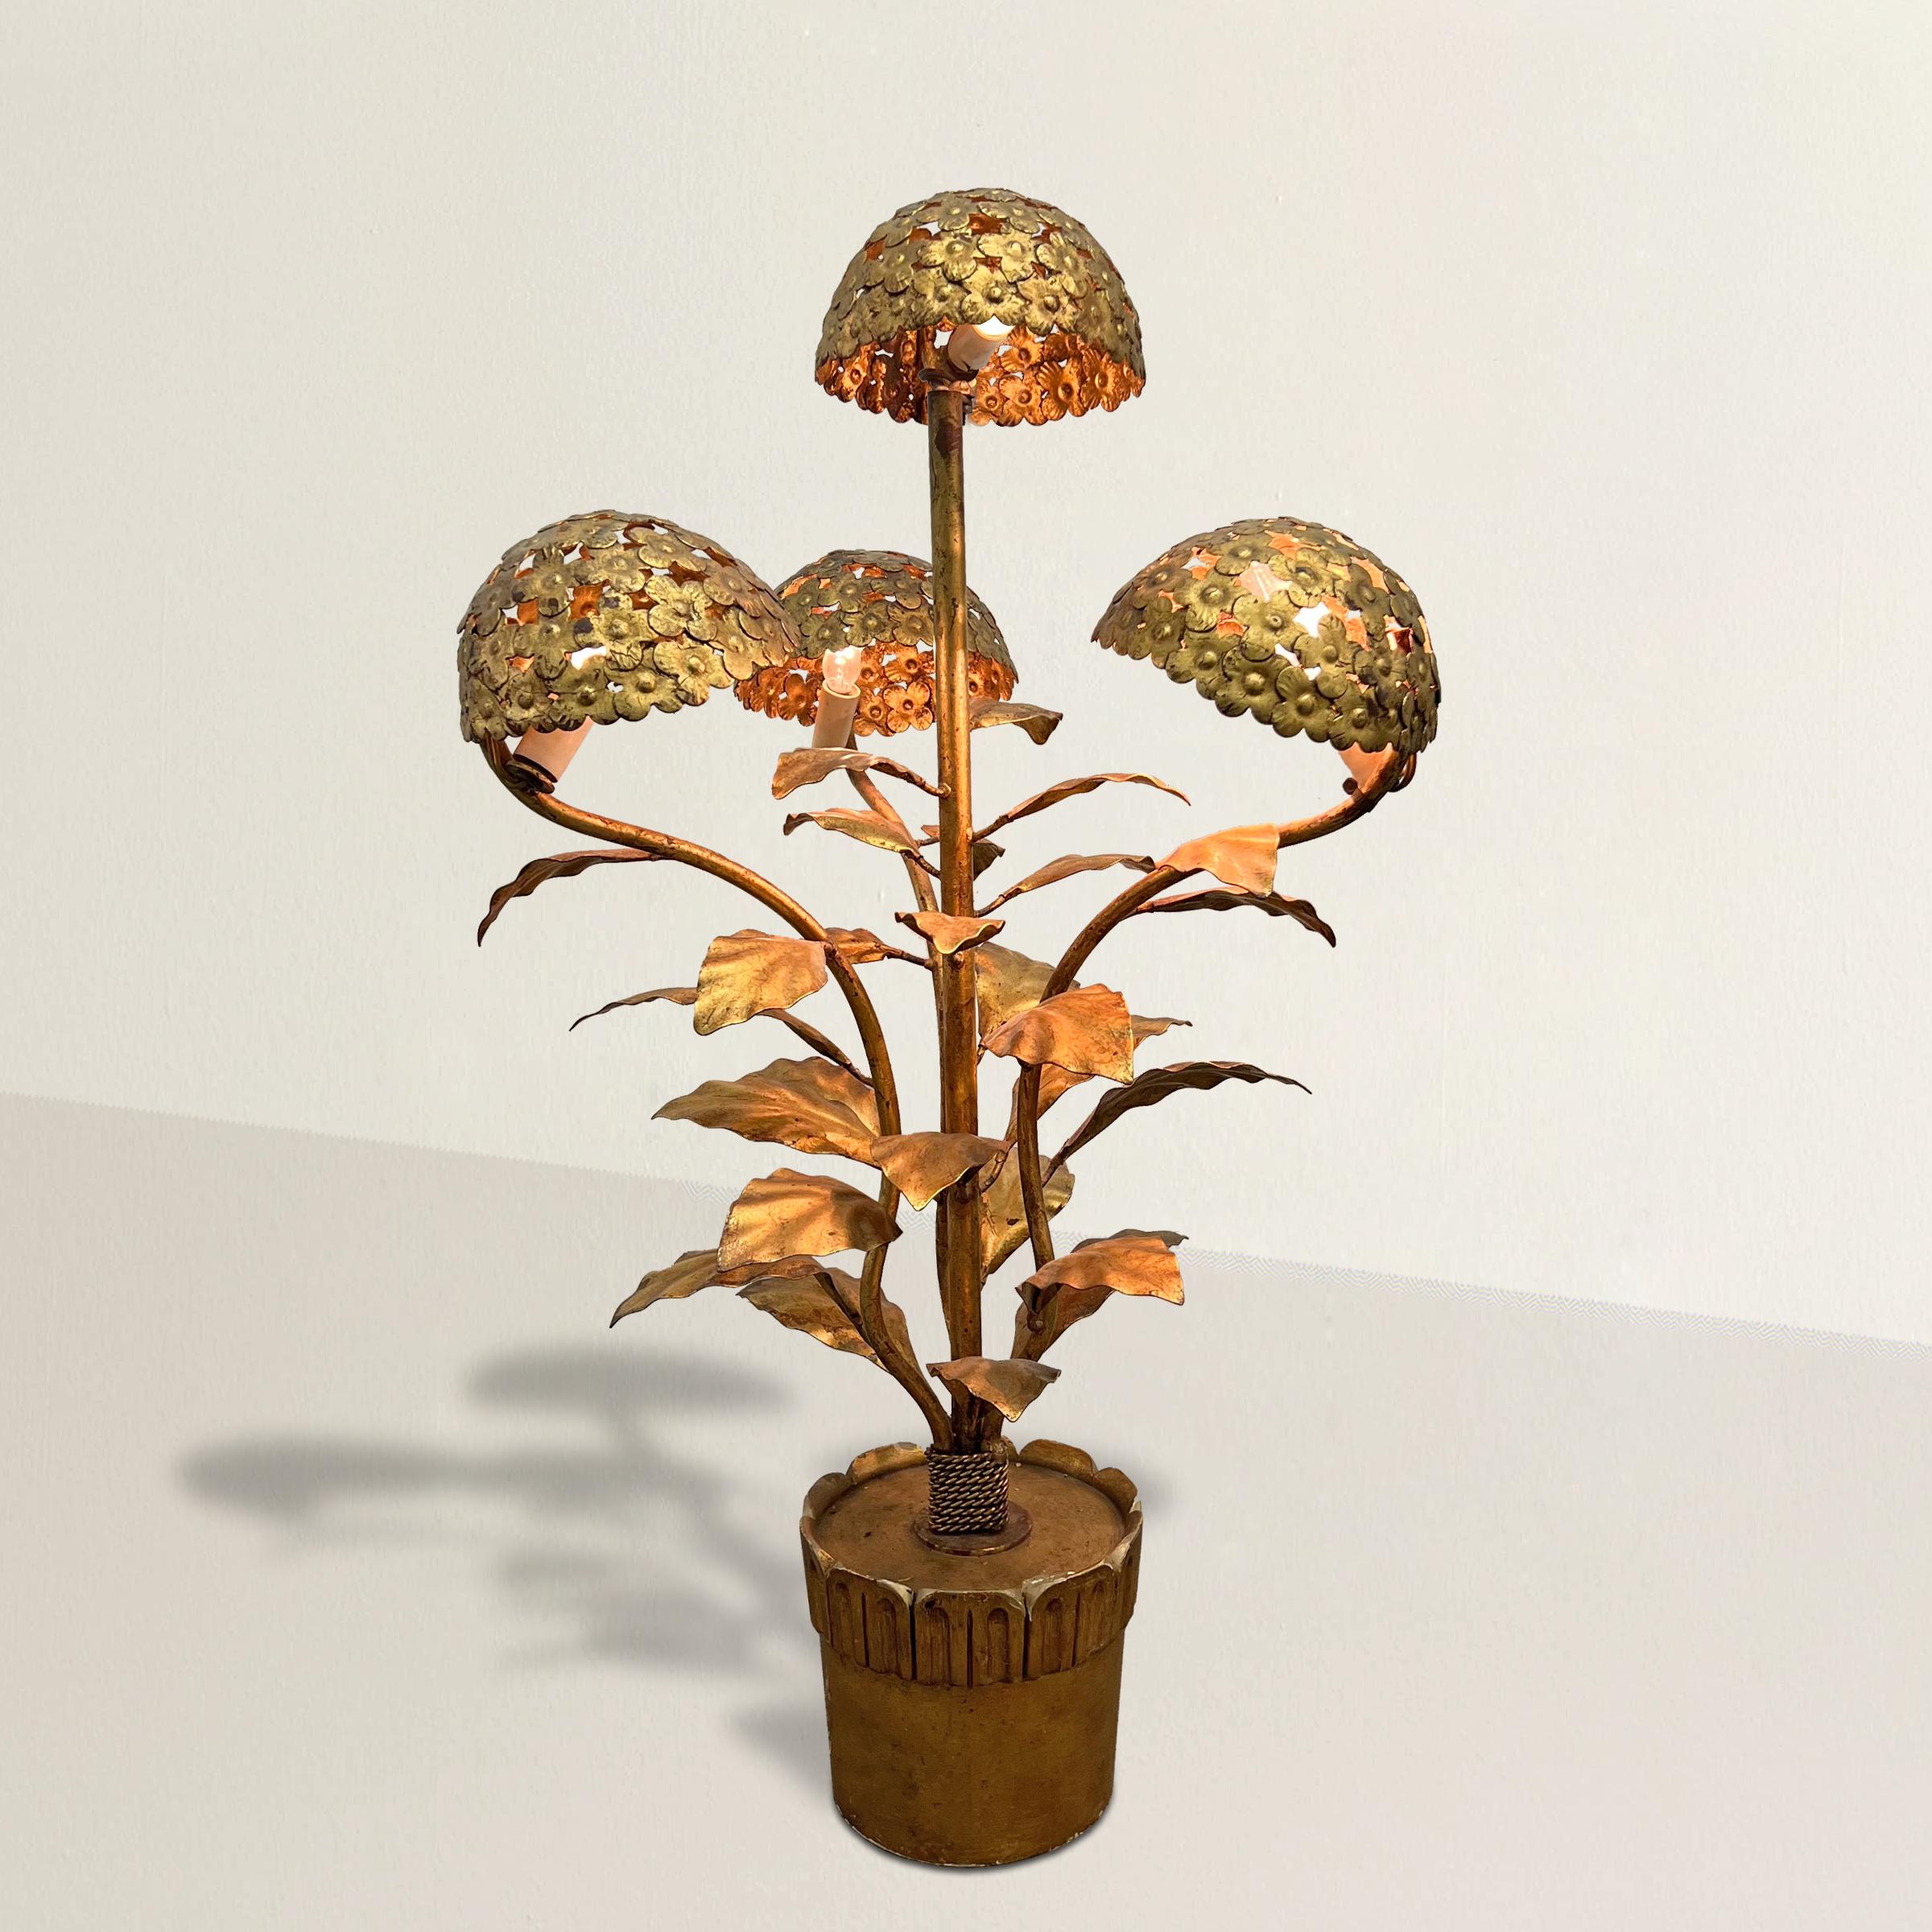 Lampe de table italienne du milieu du XXe siècle en acier doré, fantaisiste et ludique, en forme de plante d'hortensia en pot, avec trois bras entourant une tige centrale, tous avec de grandes fleurs d'hortensia en forme de tête de balai qui